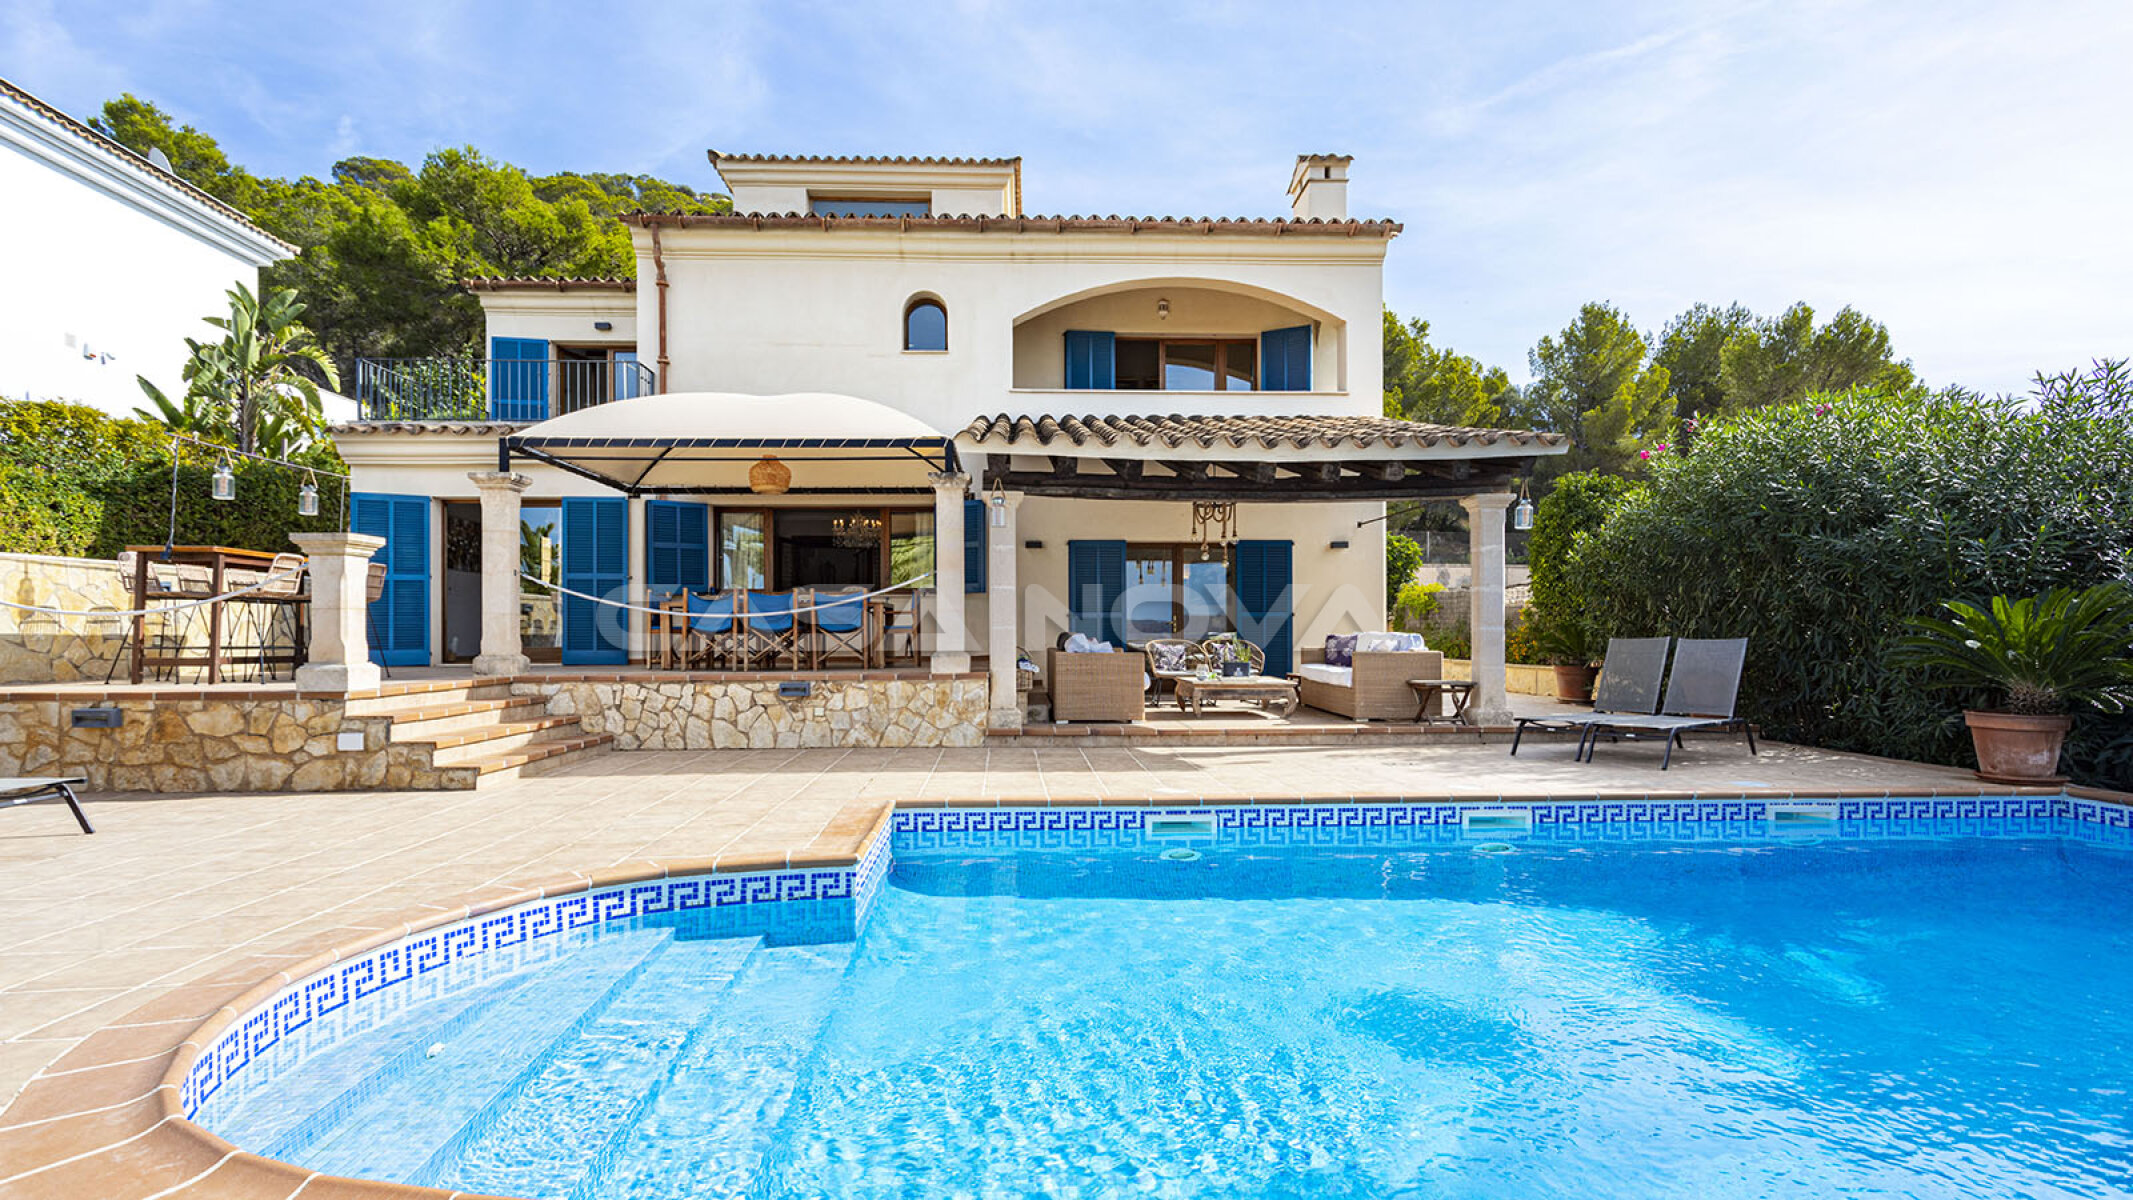 Mediterrane Villa mit Meerblick - Lizenz zur Ferienvermietung